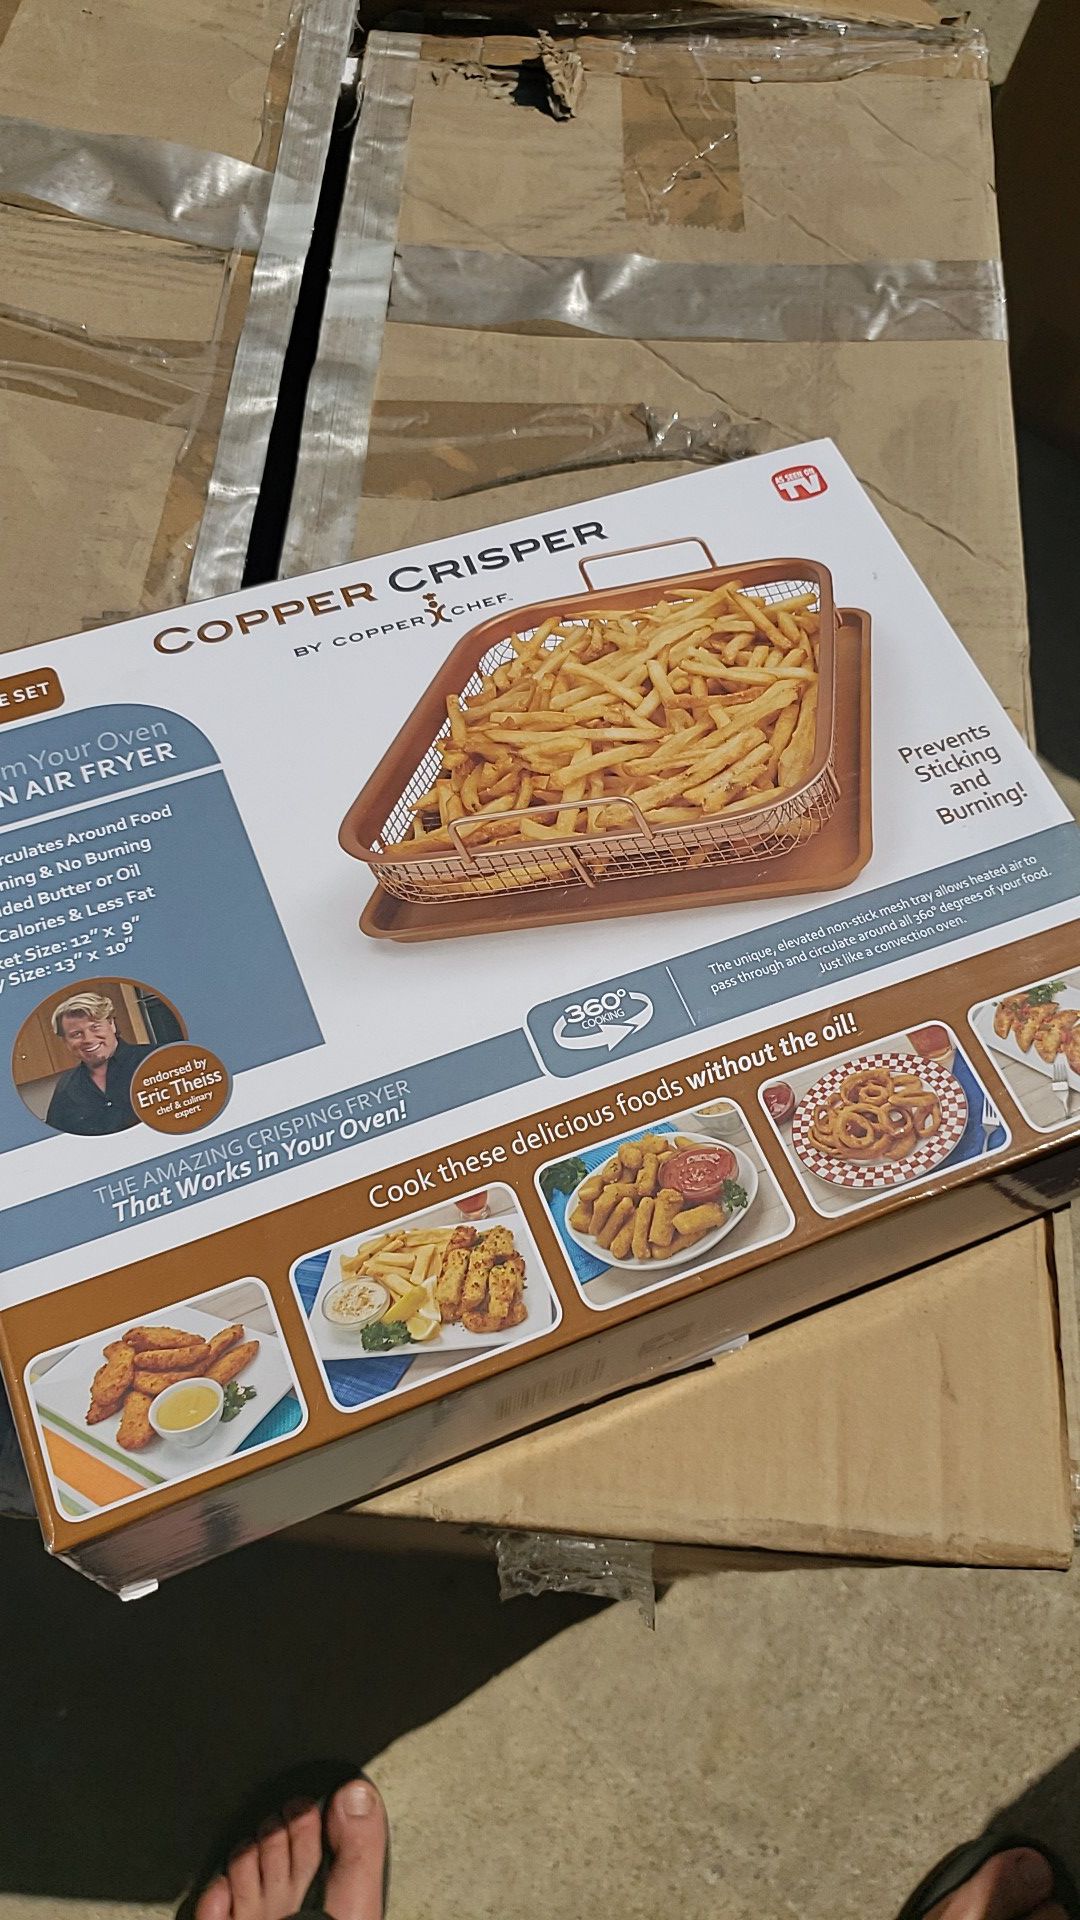 Copper Crisper by Copper Chef